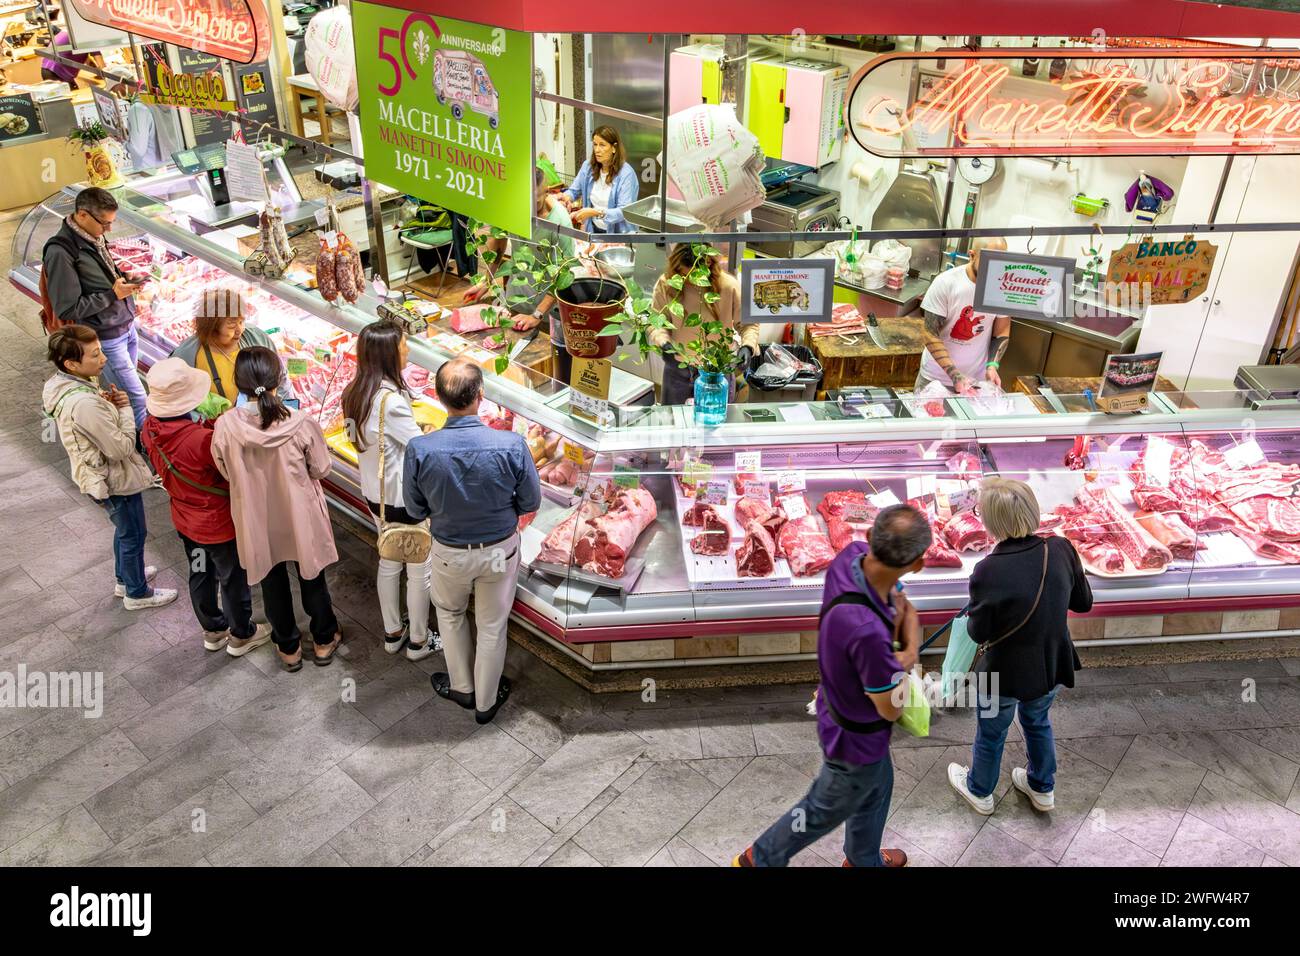 Les gens magasinent de la viande dans un comptoir de viande de boucherie à Florence Mercato Centrale, un marché animé et populaire de produits frais et de fruits et légumes frais à Florence en Italie Banque D'Images